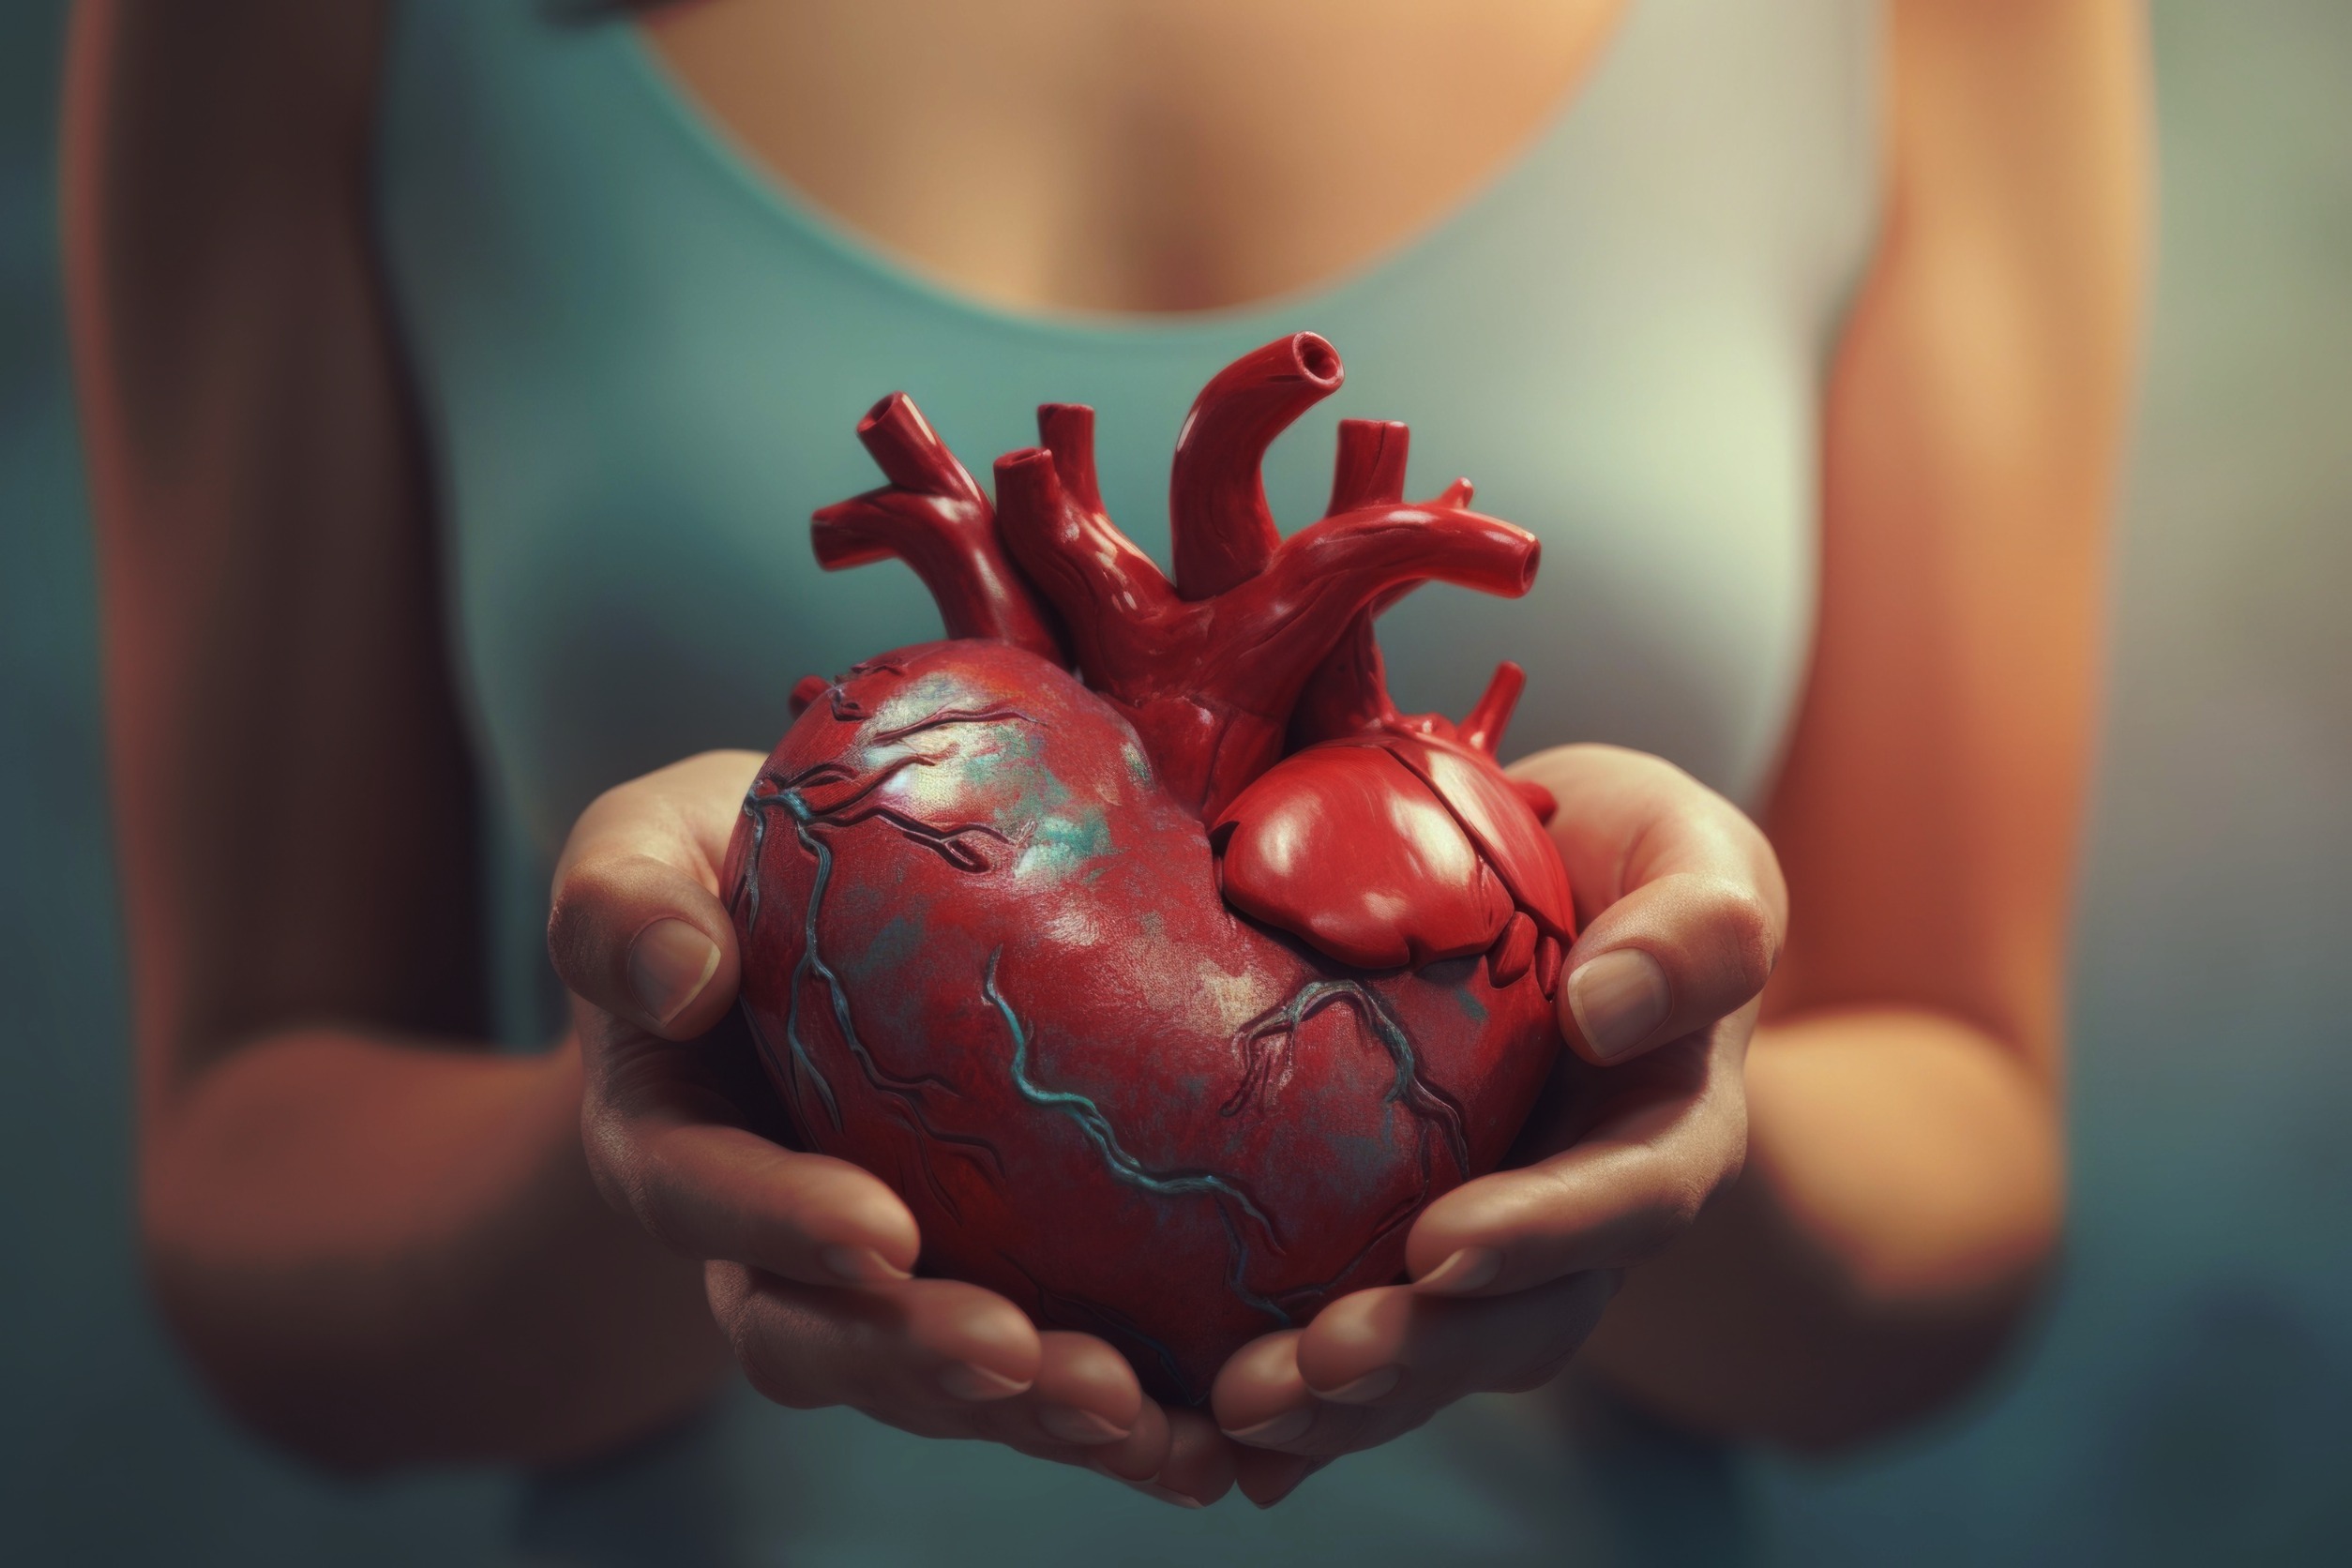 Hoeveel vermindert het risico op een hartaanval na één jaar niet roken? 24